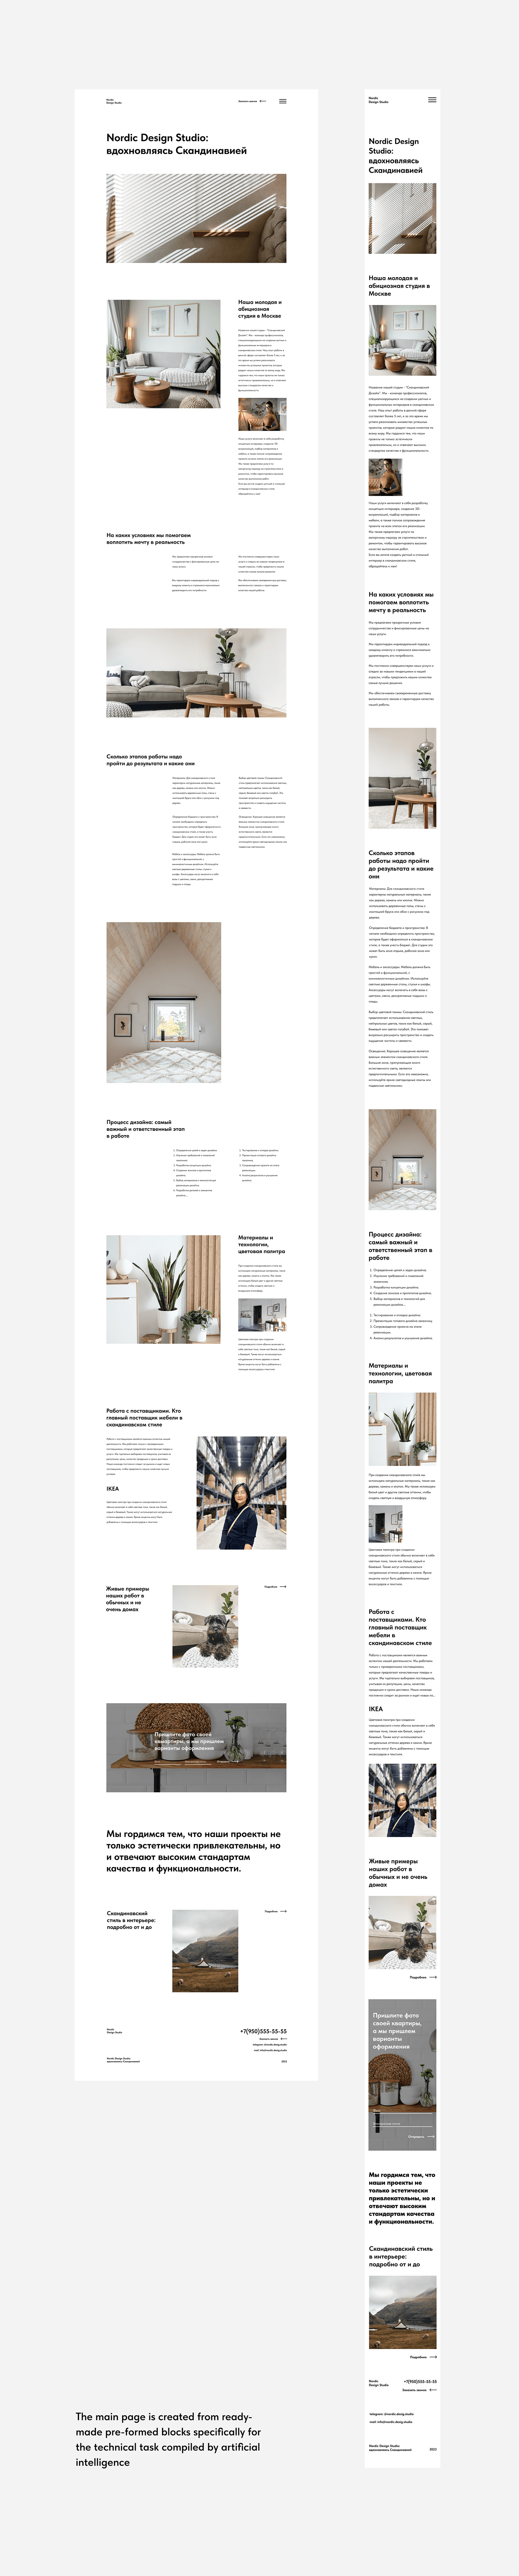 Nordic Design Studio, website design, minimalism, swiss grid. 
Design school of Kalinin Michael